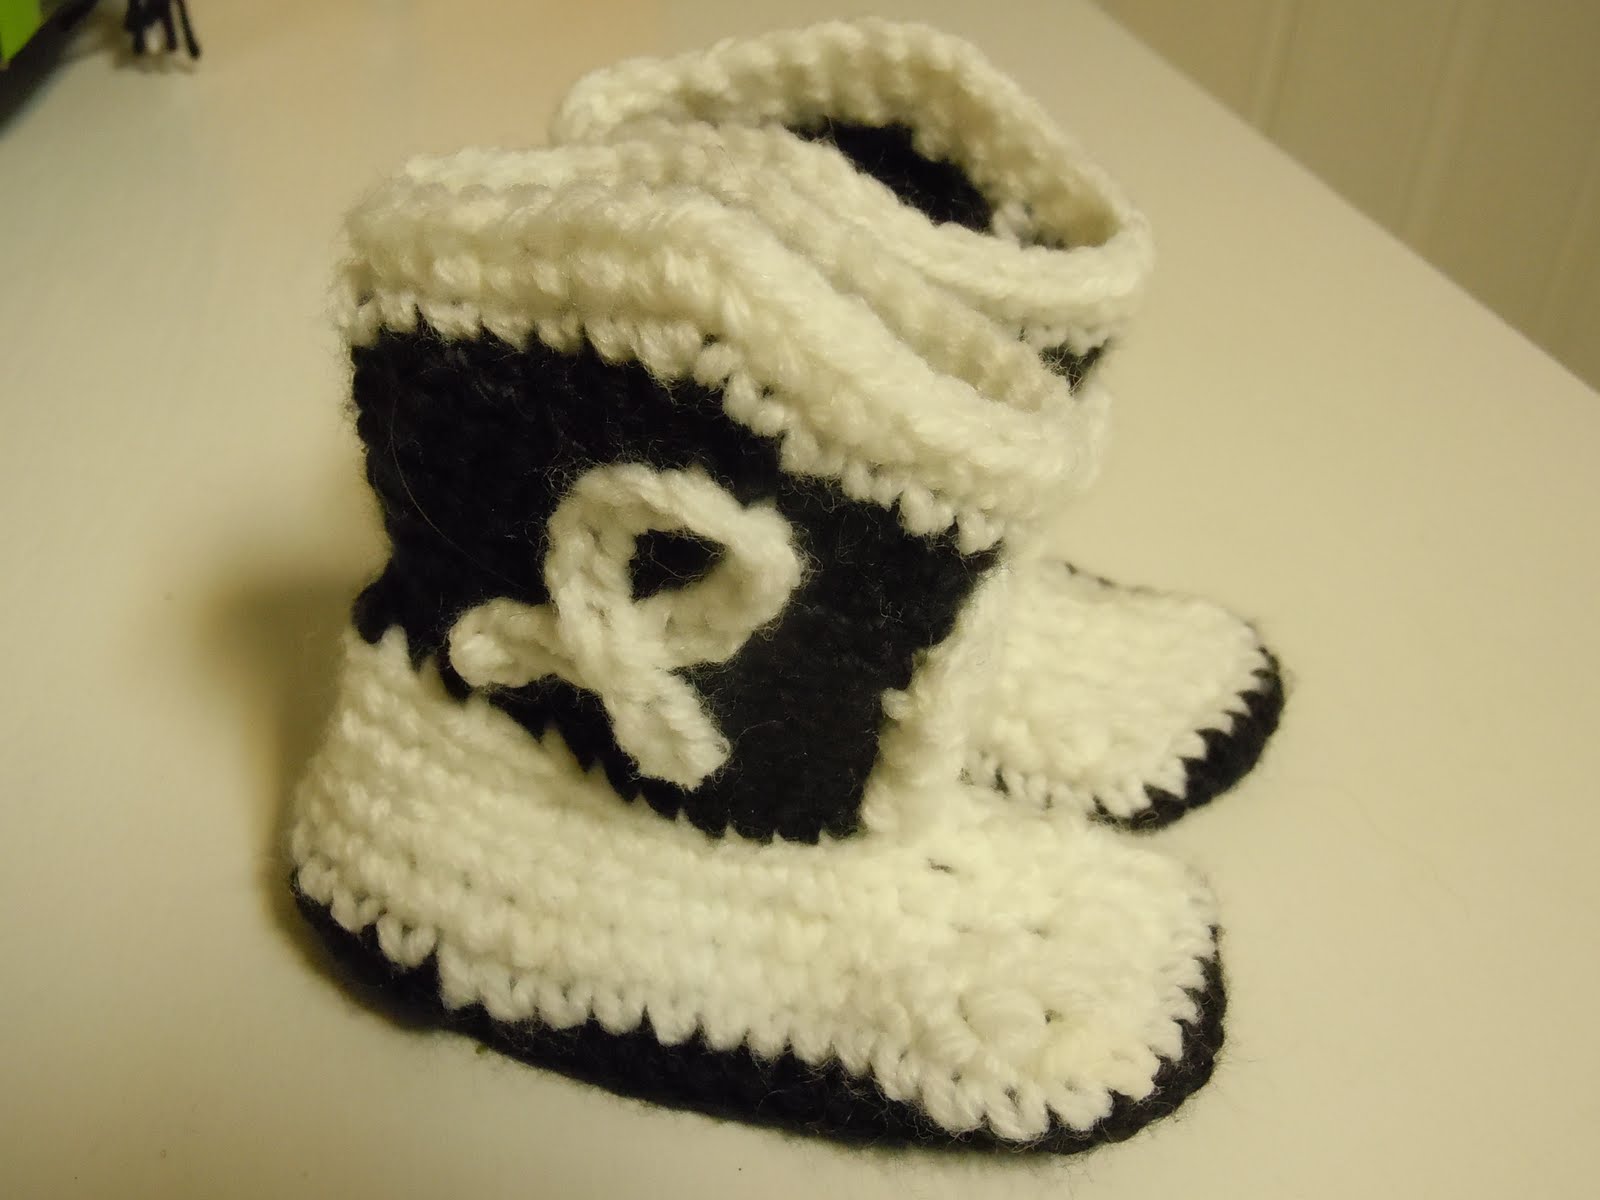 MaryJanesFarm Farmgirl Connection - Knit or Crochet Baby Cowboy